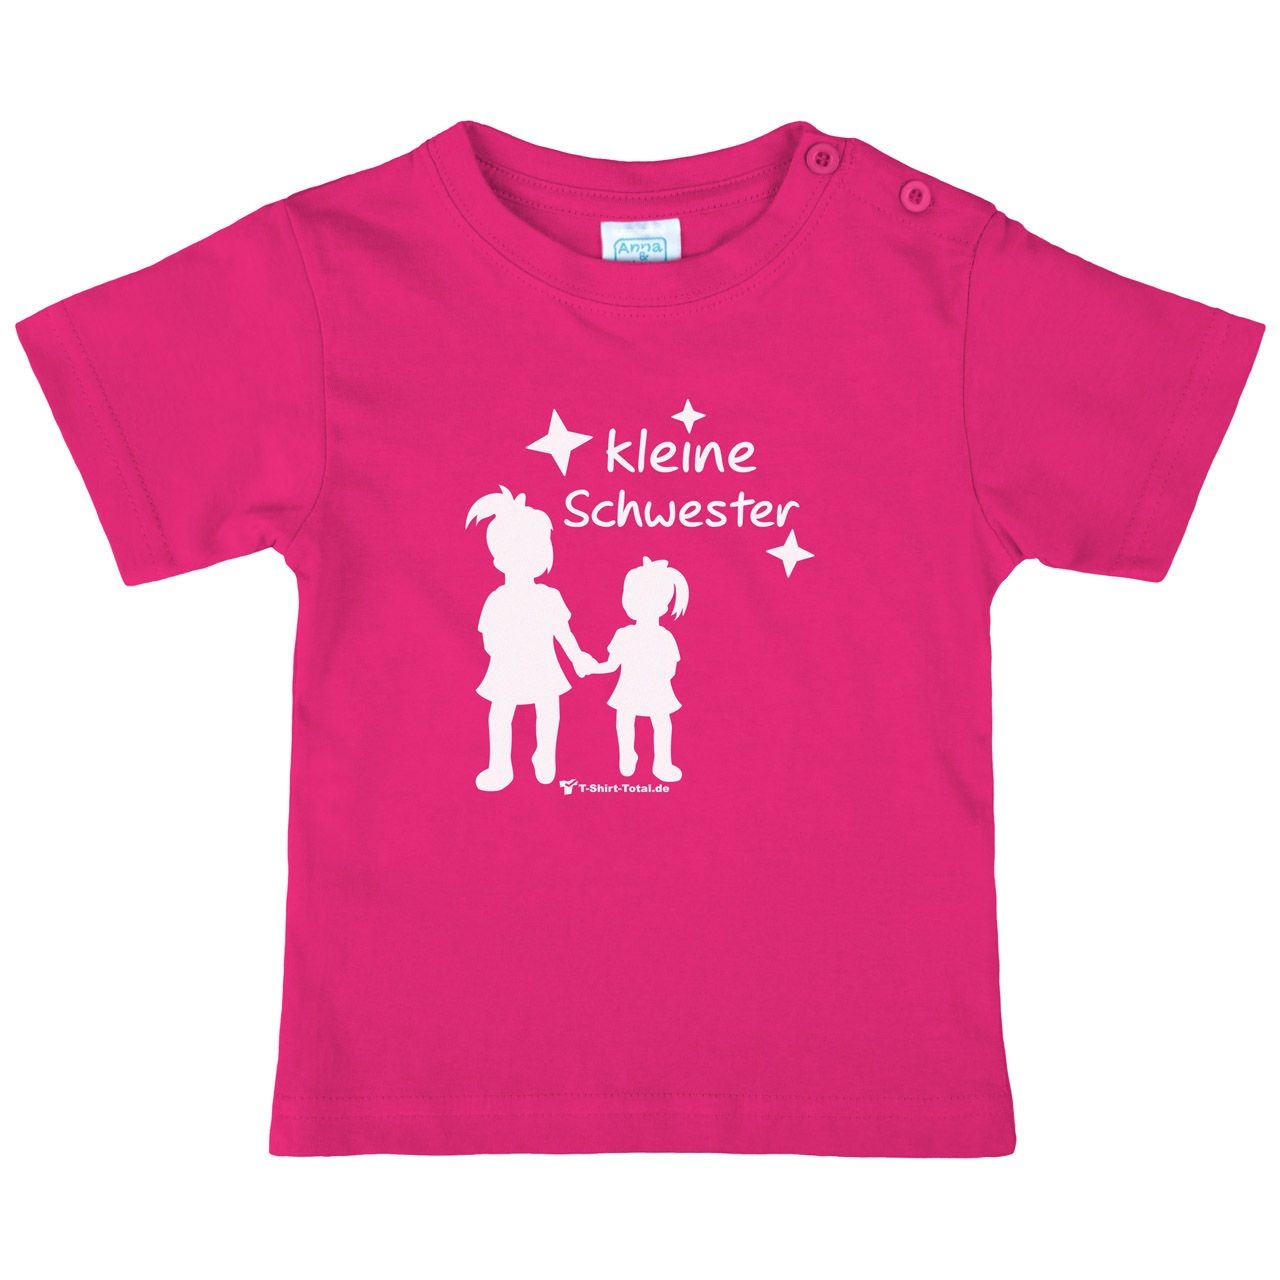 Kleine Schwester MM Kinder T-Shirt pink 68 / 74